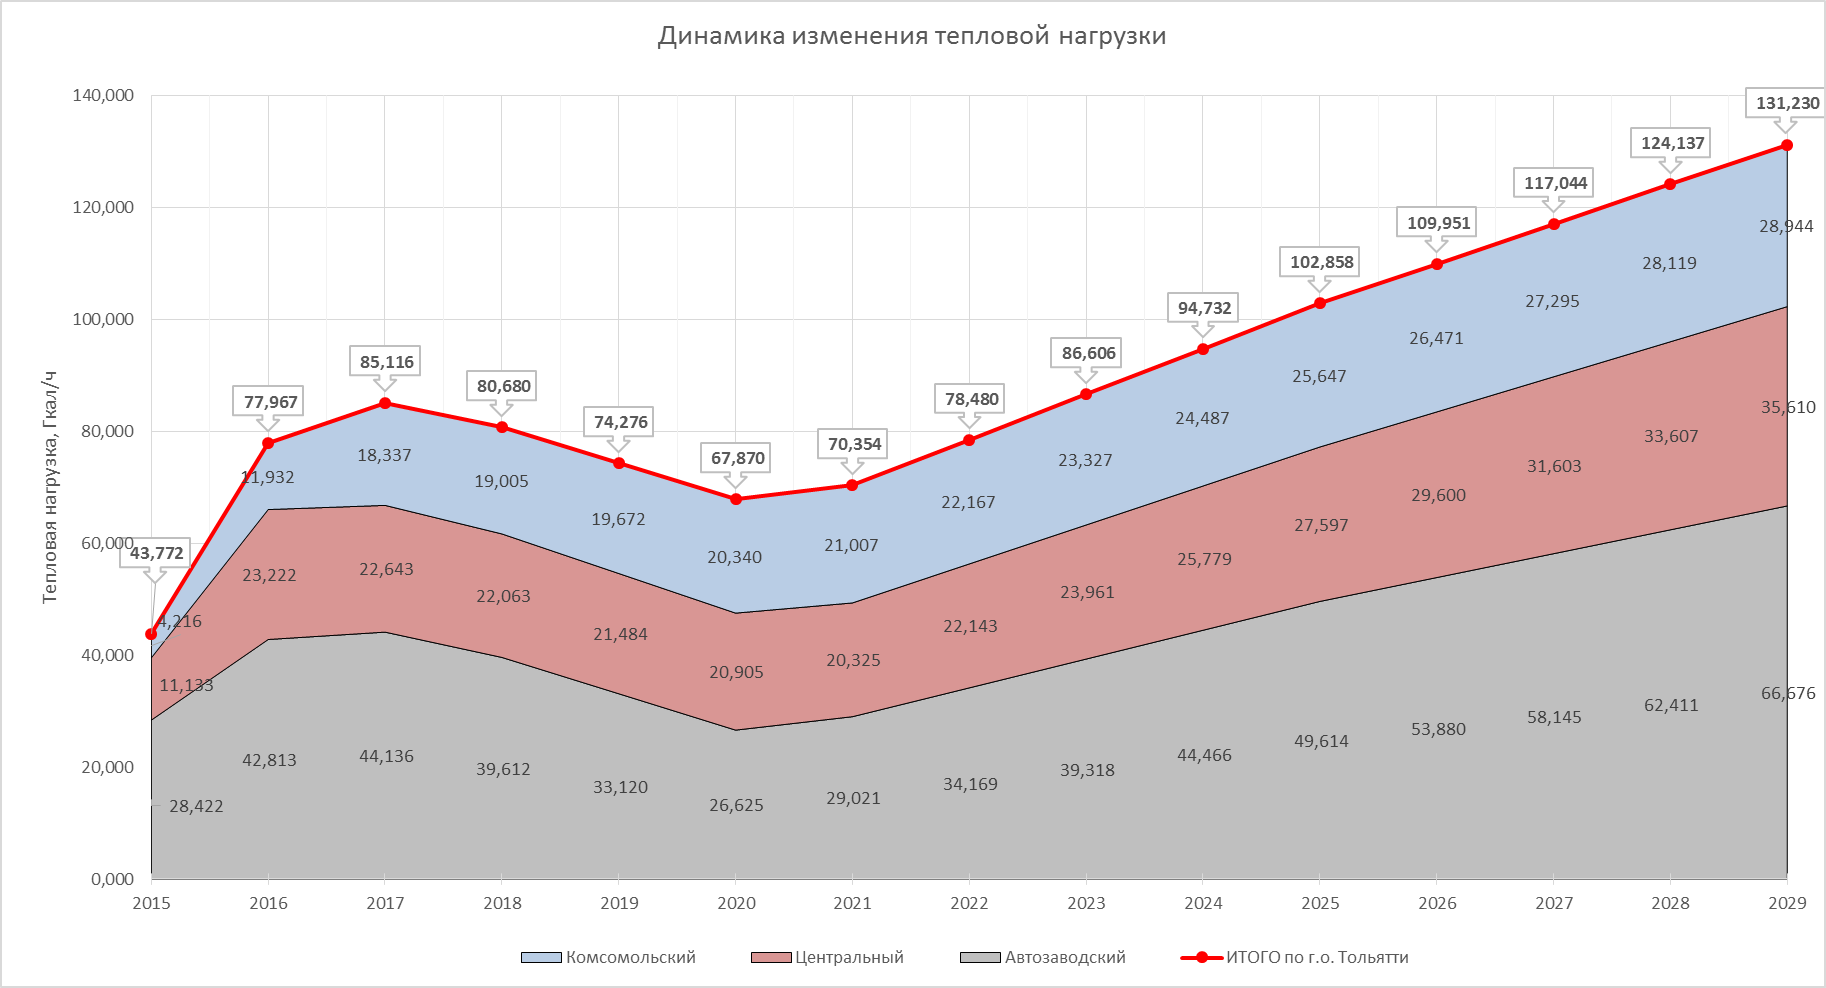 Недвижимость в москве 2024 прогноз цен. Динамика стоимости металла 2022. Динамика роста стоимости металла. Рост стоимости металла в 2020 график. Динамика роста металла 2021.